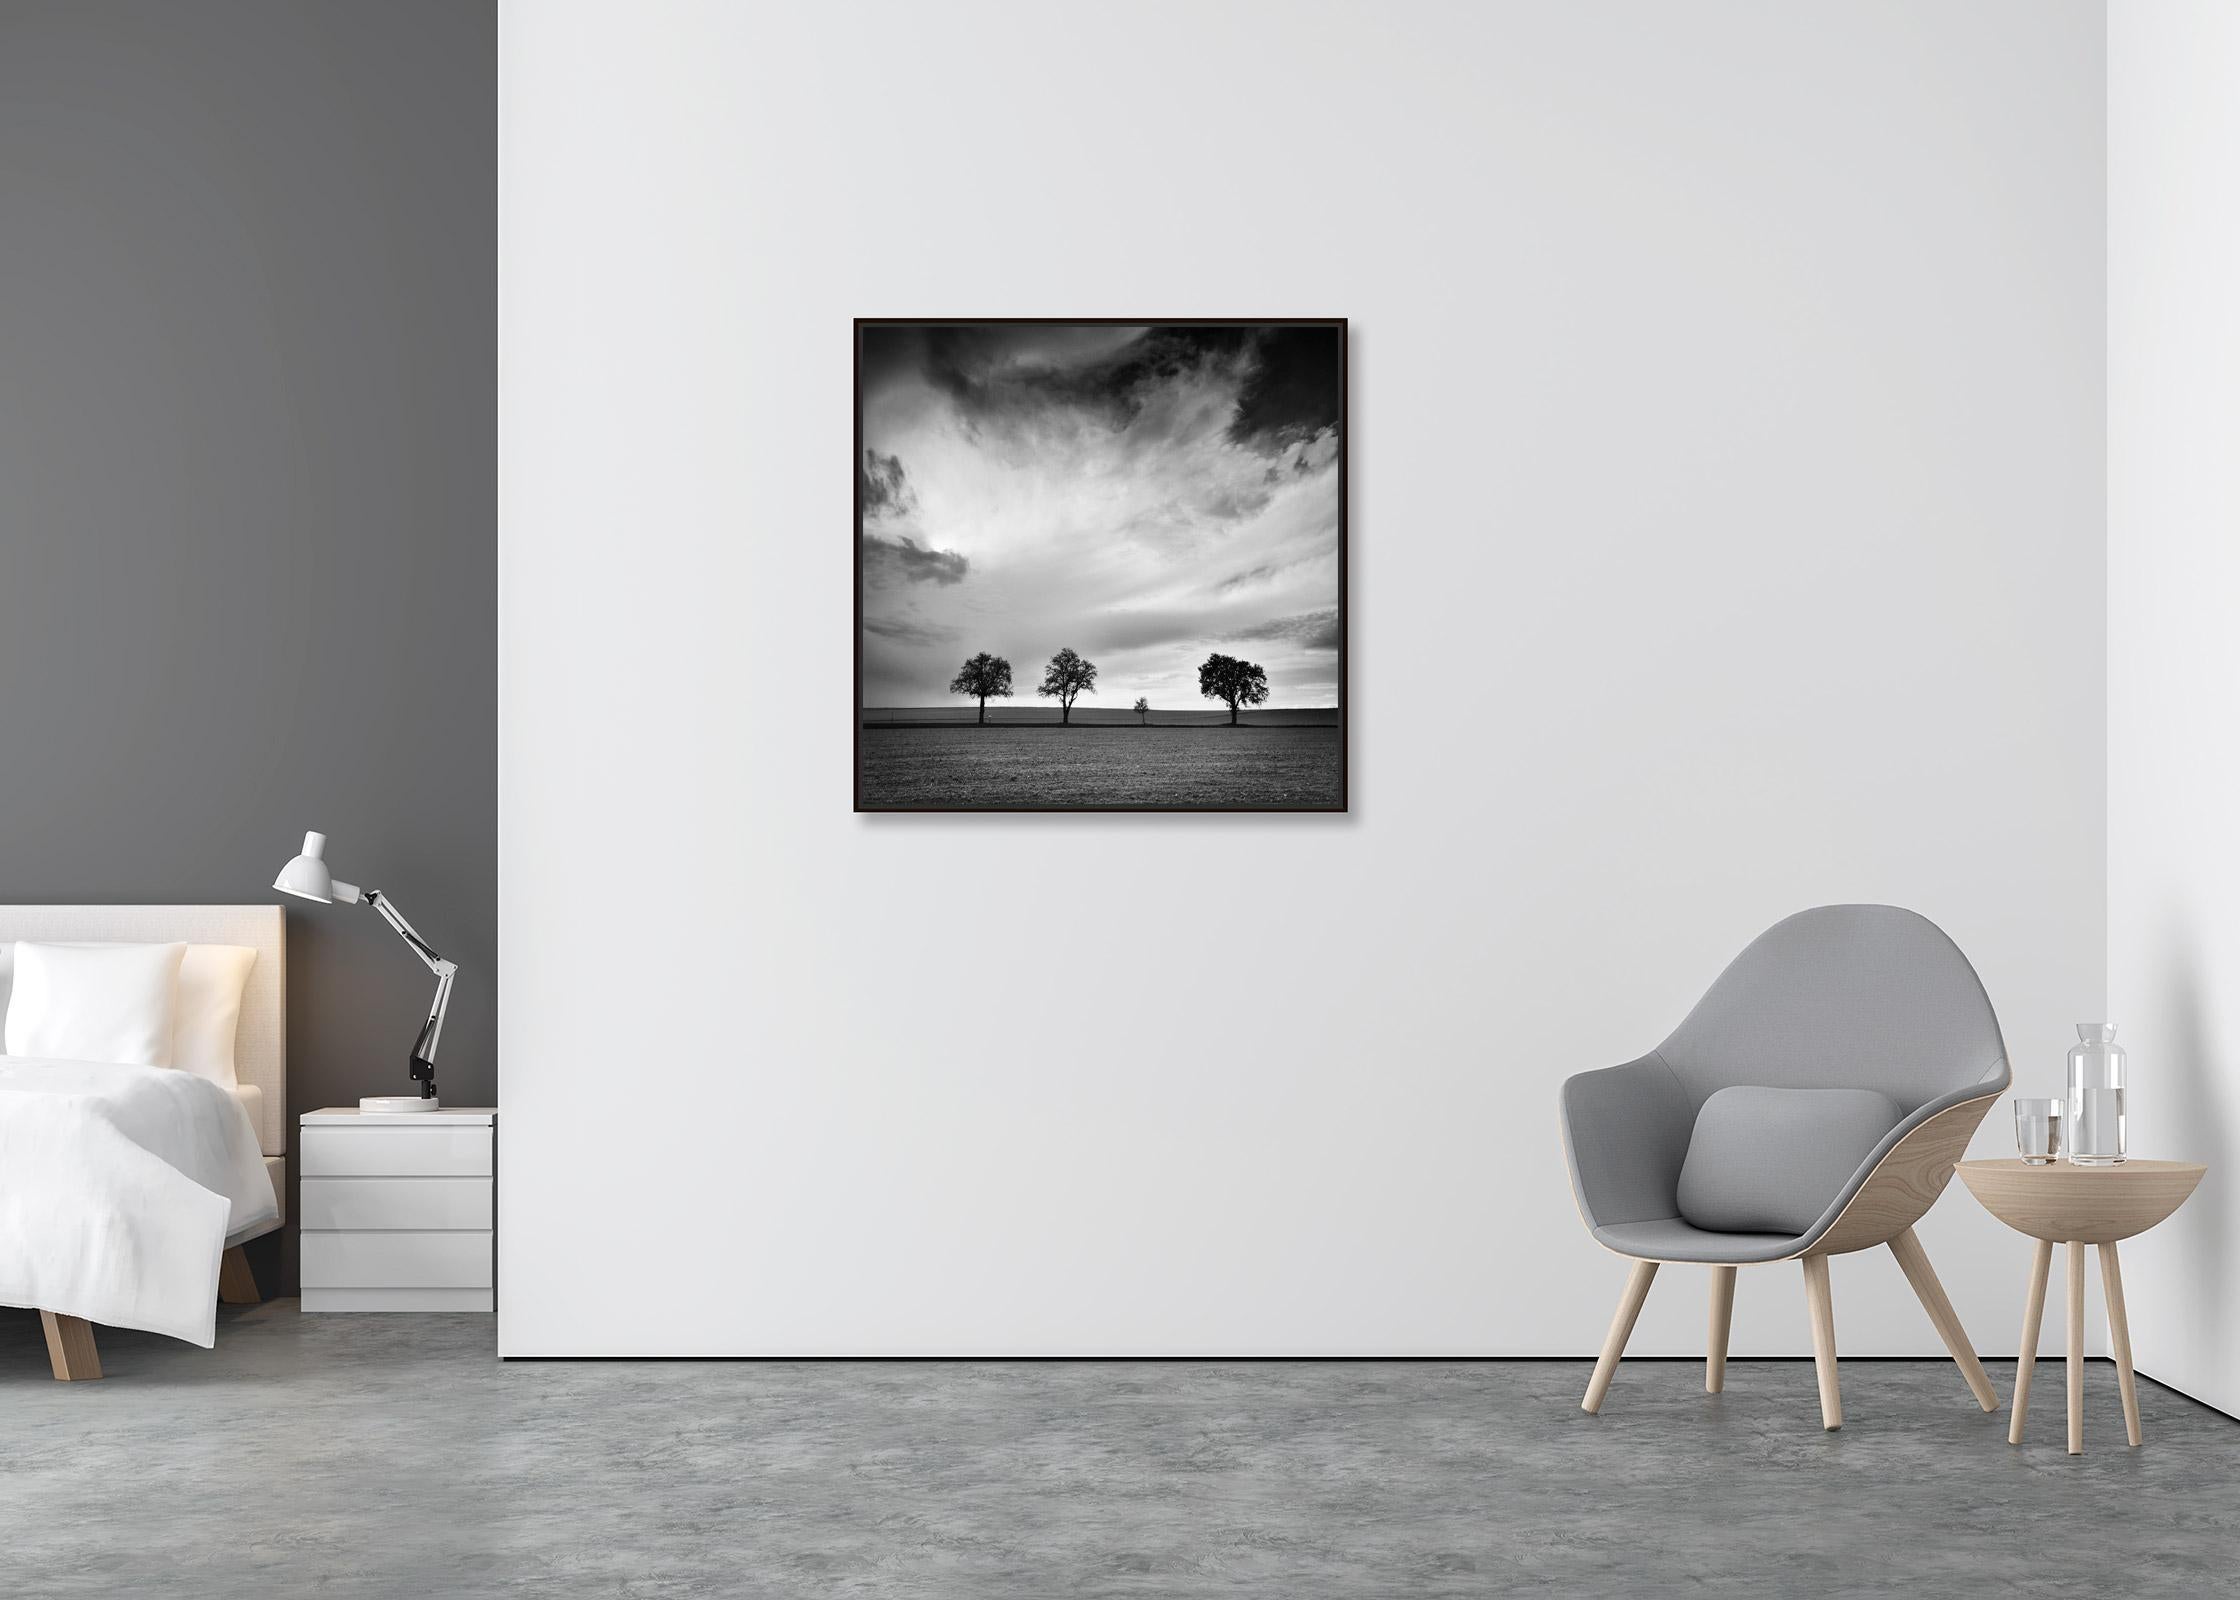 Dreieinhalb Baum, sehr wolkenverhangen, Sturm, Schwarz-Weiß-Landschaftsfotografie (Zeitgenössisch), Photograph, von Gerald Berghammer